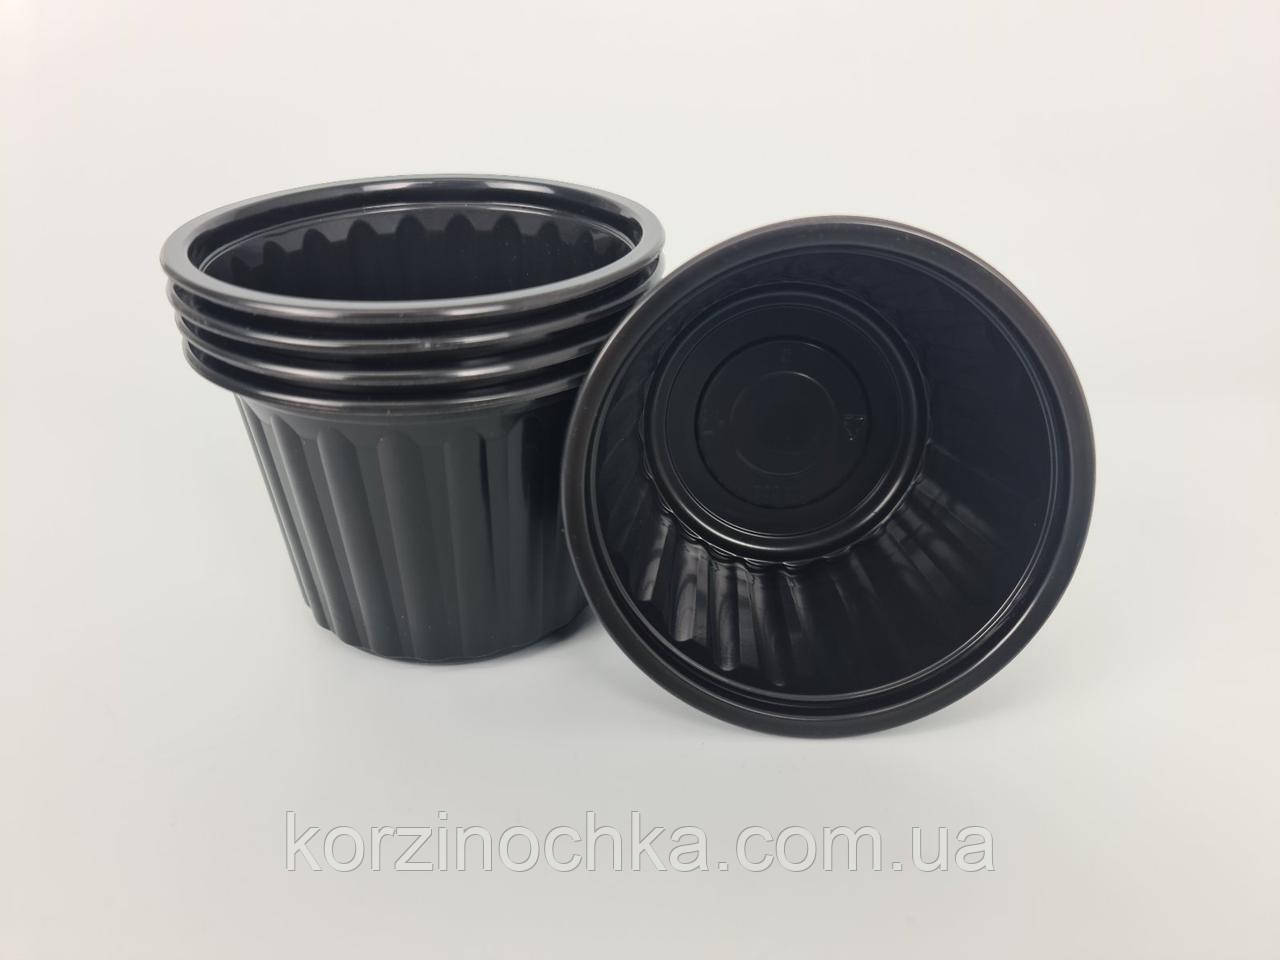 Супник чорний ребристий D-115(500 г)Андрекс(50 шт)Ємність Харчова для рідкого і гарячого